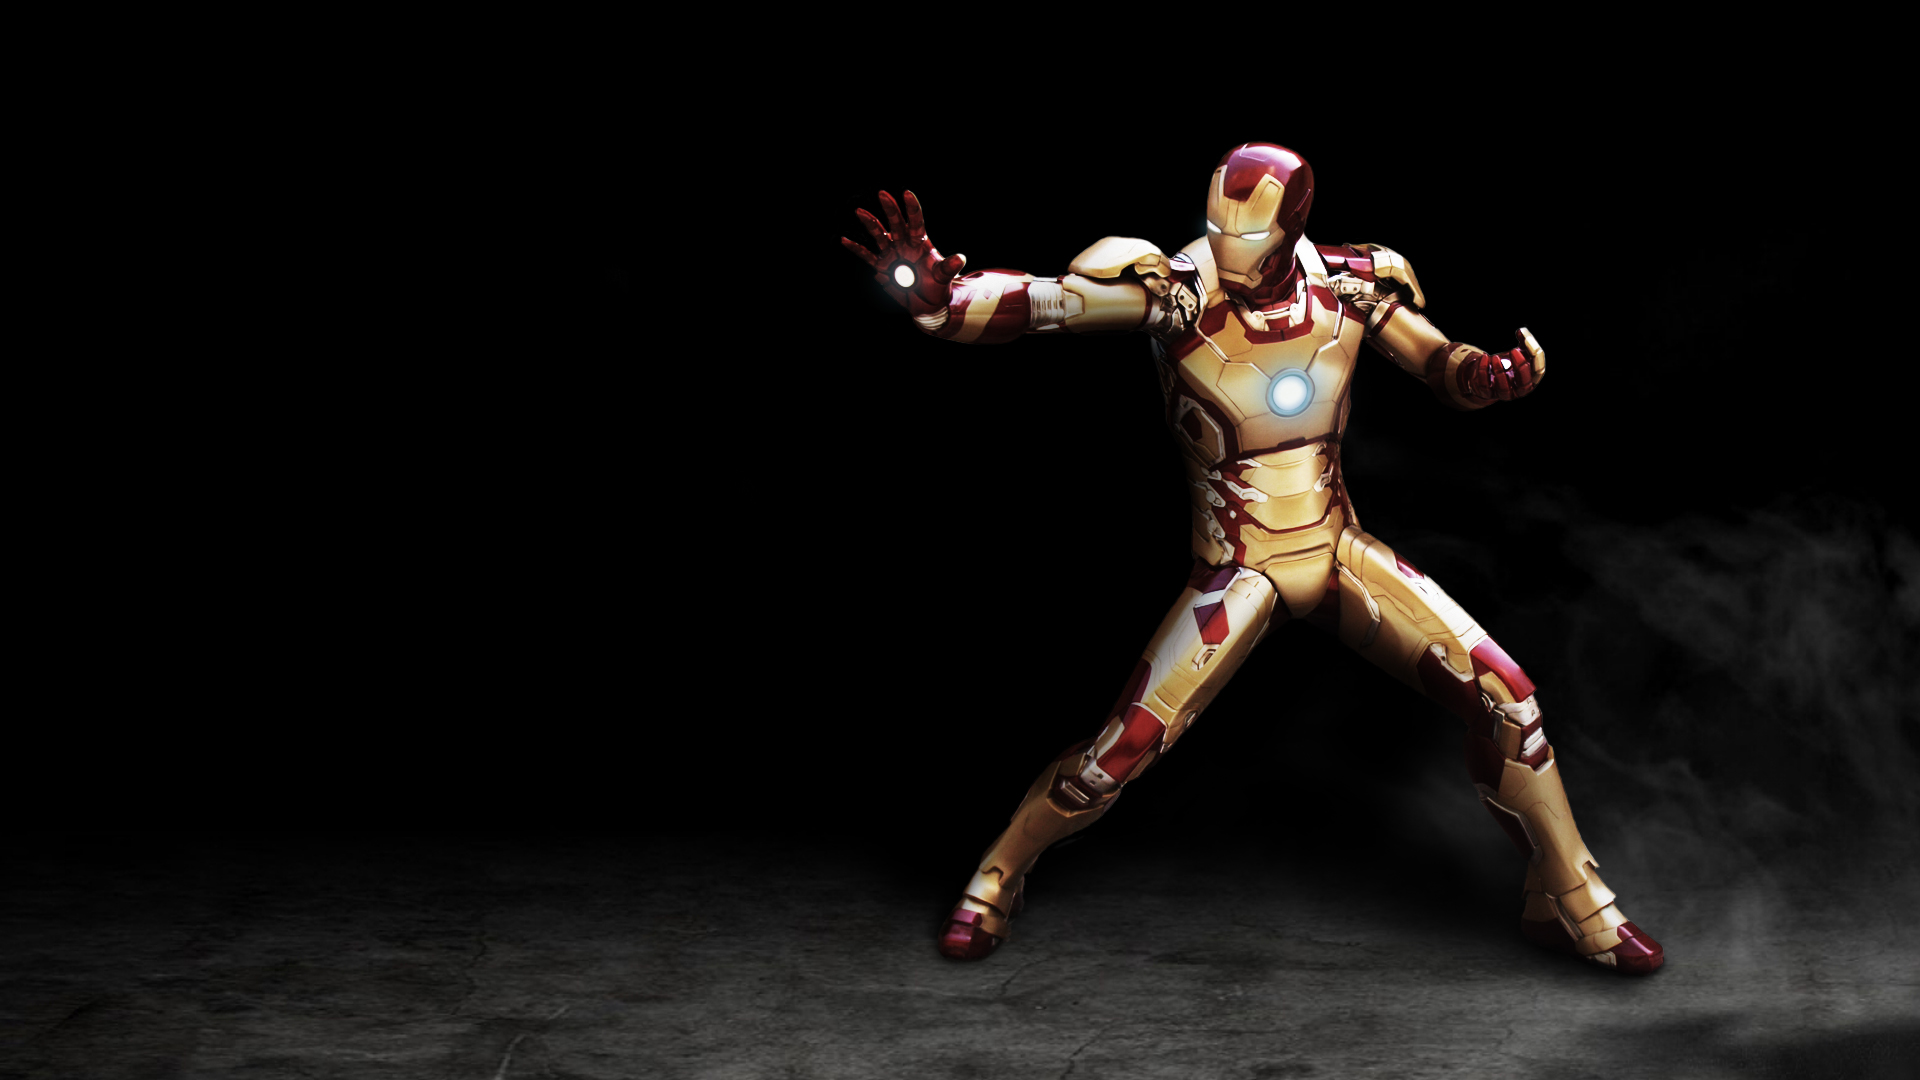 Iron Man Images Free Download Pixelstalknet